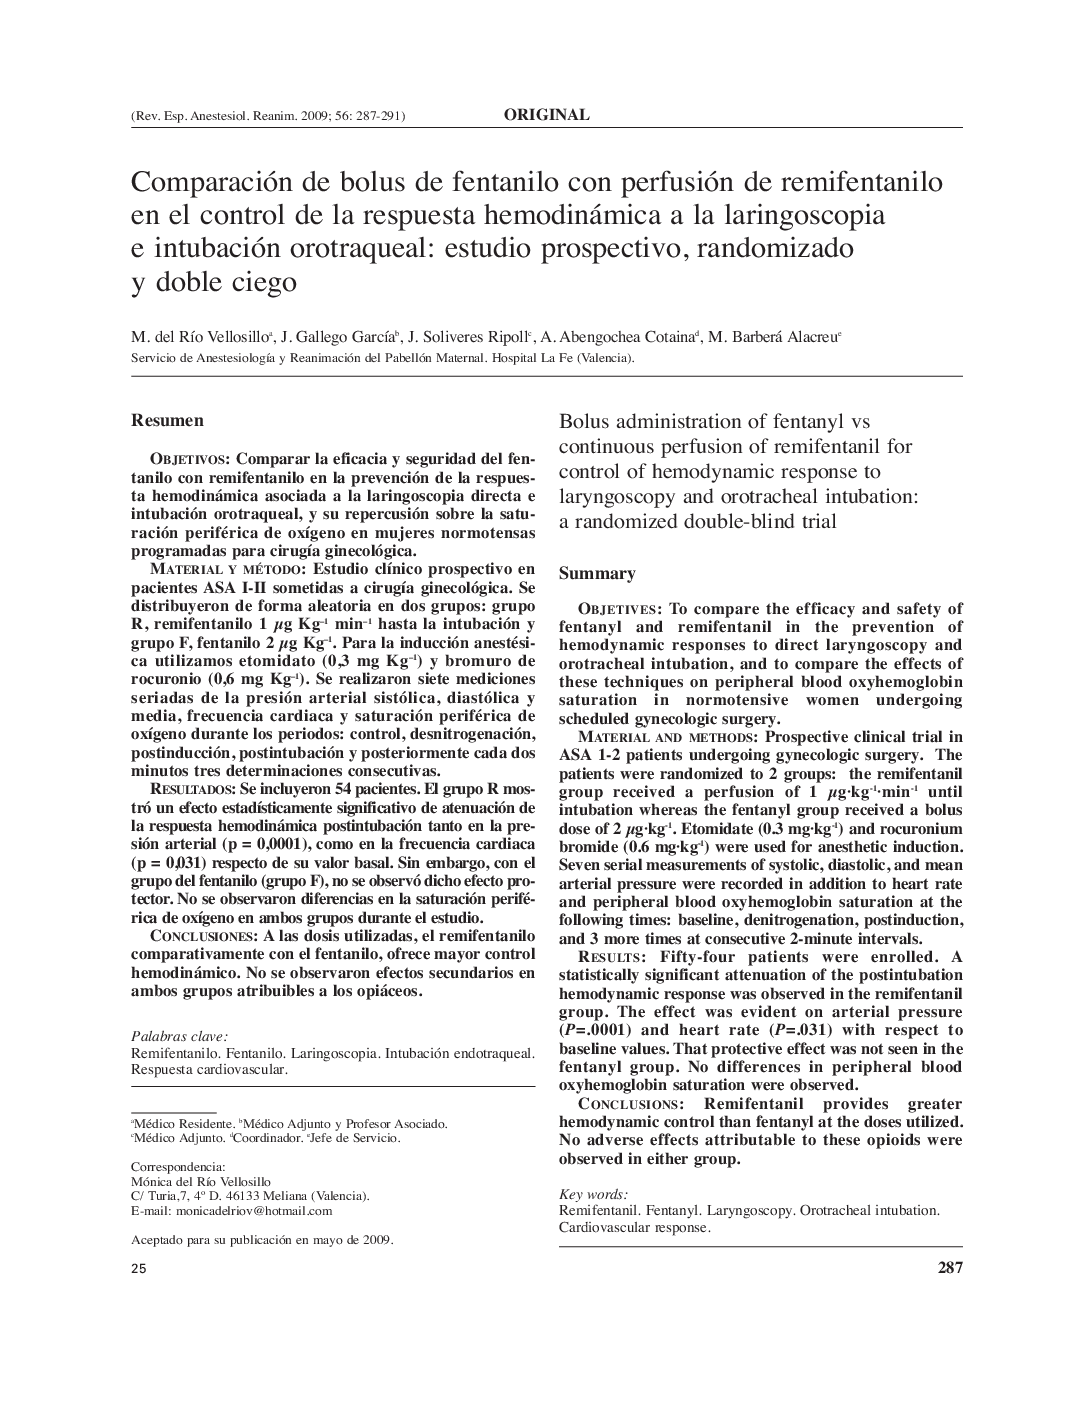 Comparación de bolus de fentanilo con perfusión de remifentanilo en el control de la respuesta hemodinámica a la laringoscopia e intubación orotraqueal: estudio prospectivo, randomizado y doble ciego